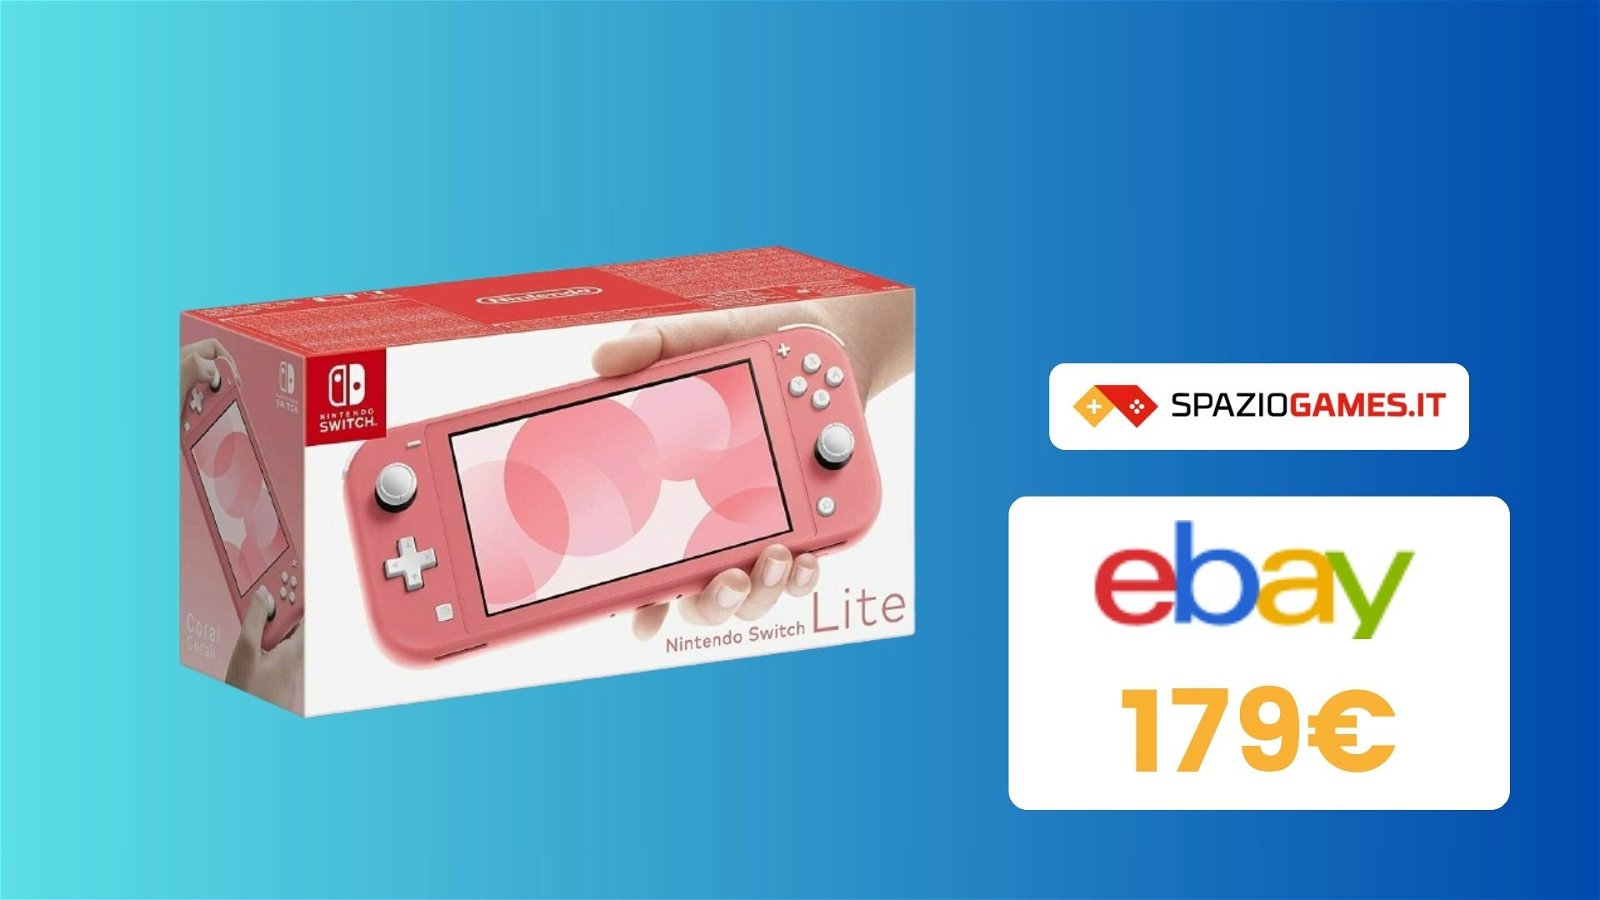 Nintendo Switch Lite: Il regalo di Natale ideale a soli 179€!